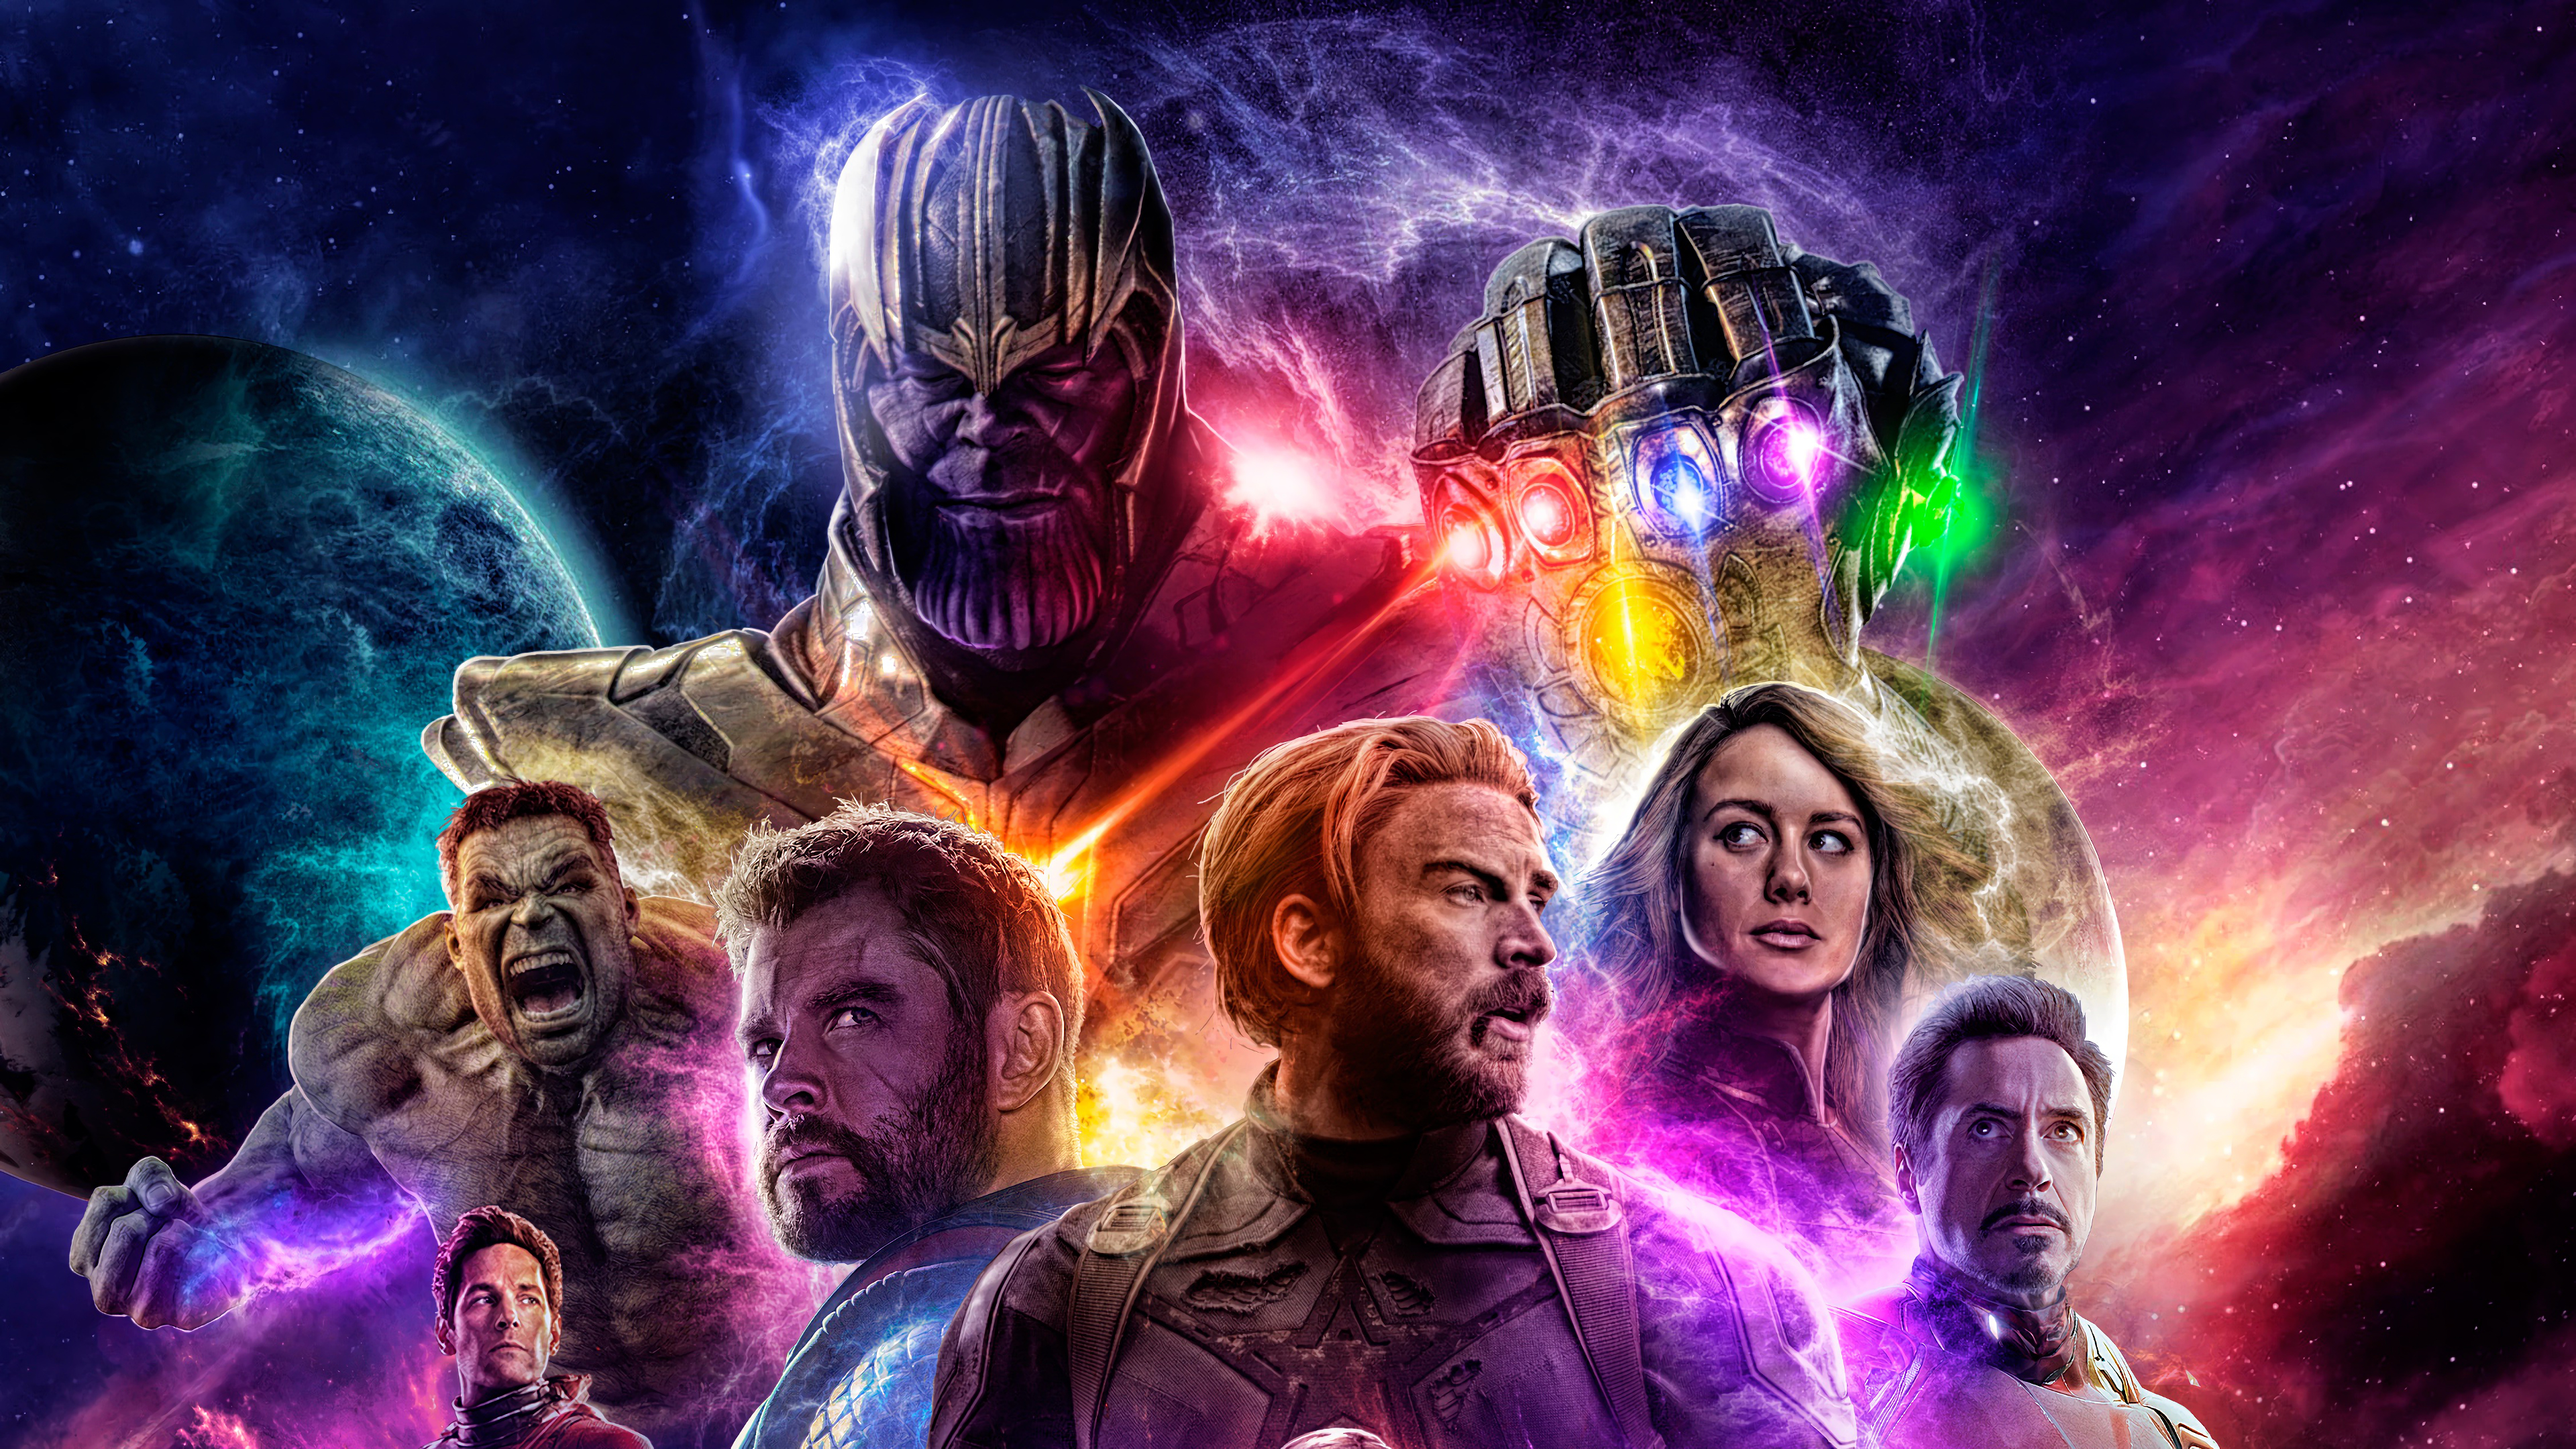 Постеры 2019. Мстители: финал Avengers: Endgame, 2019. Танос Мстители 4 финал. Постер "Мстители. Финал 2019".